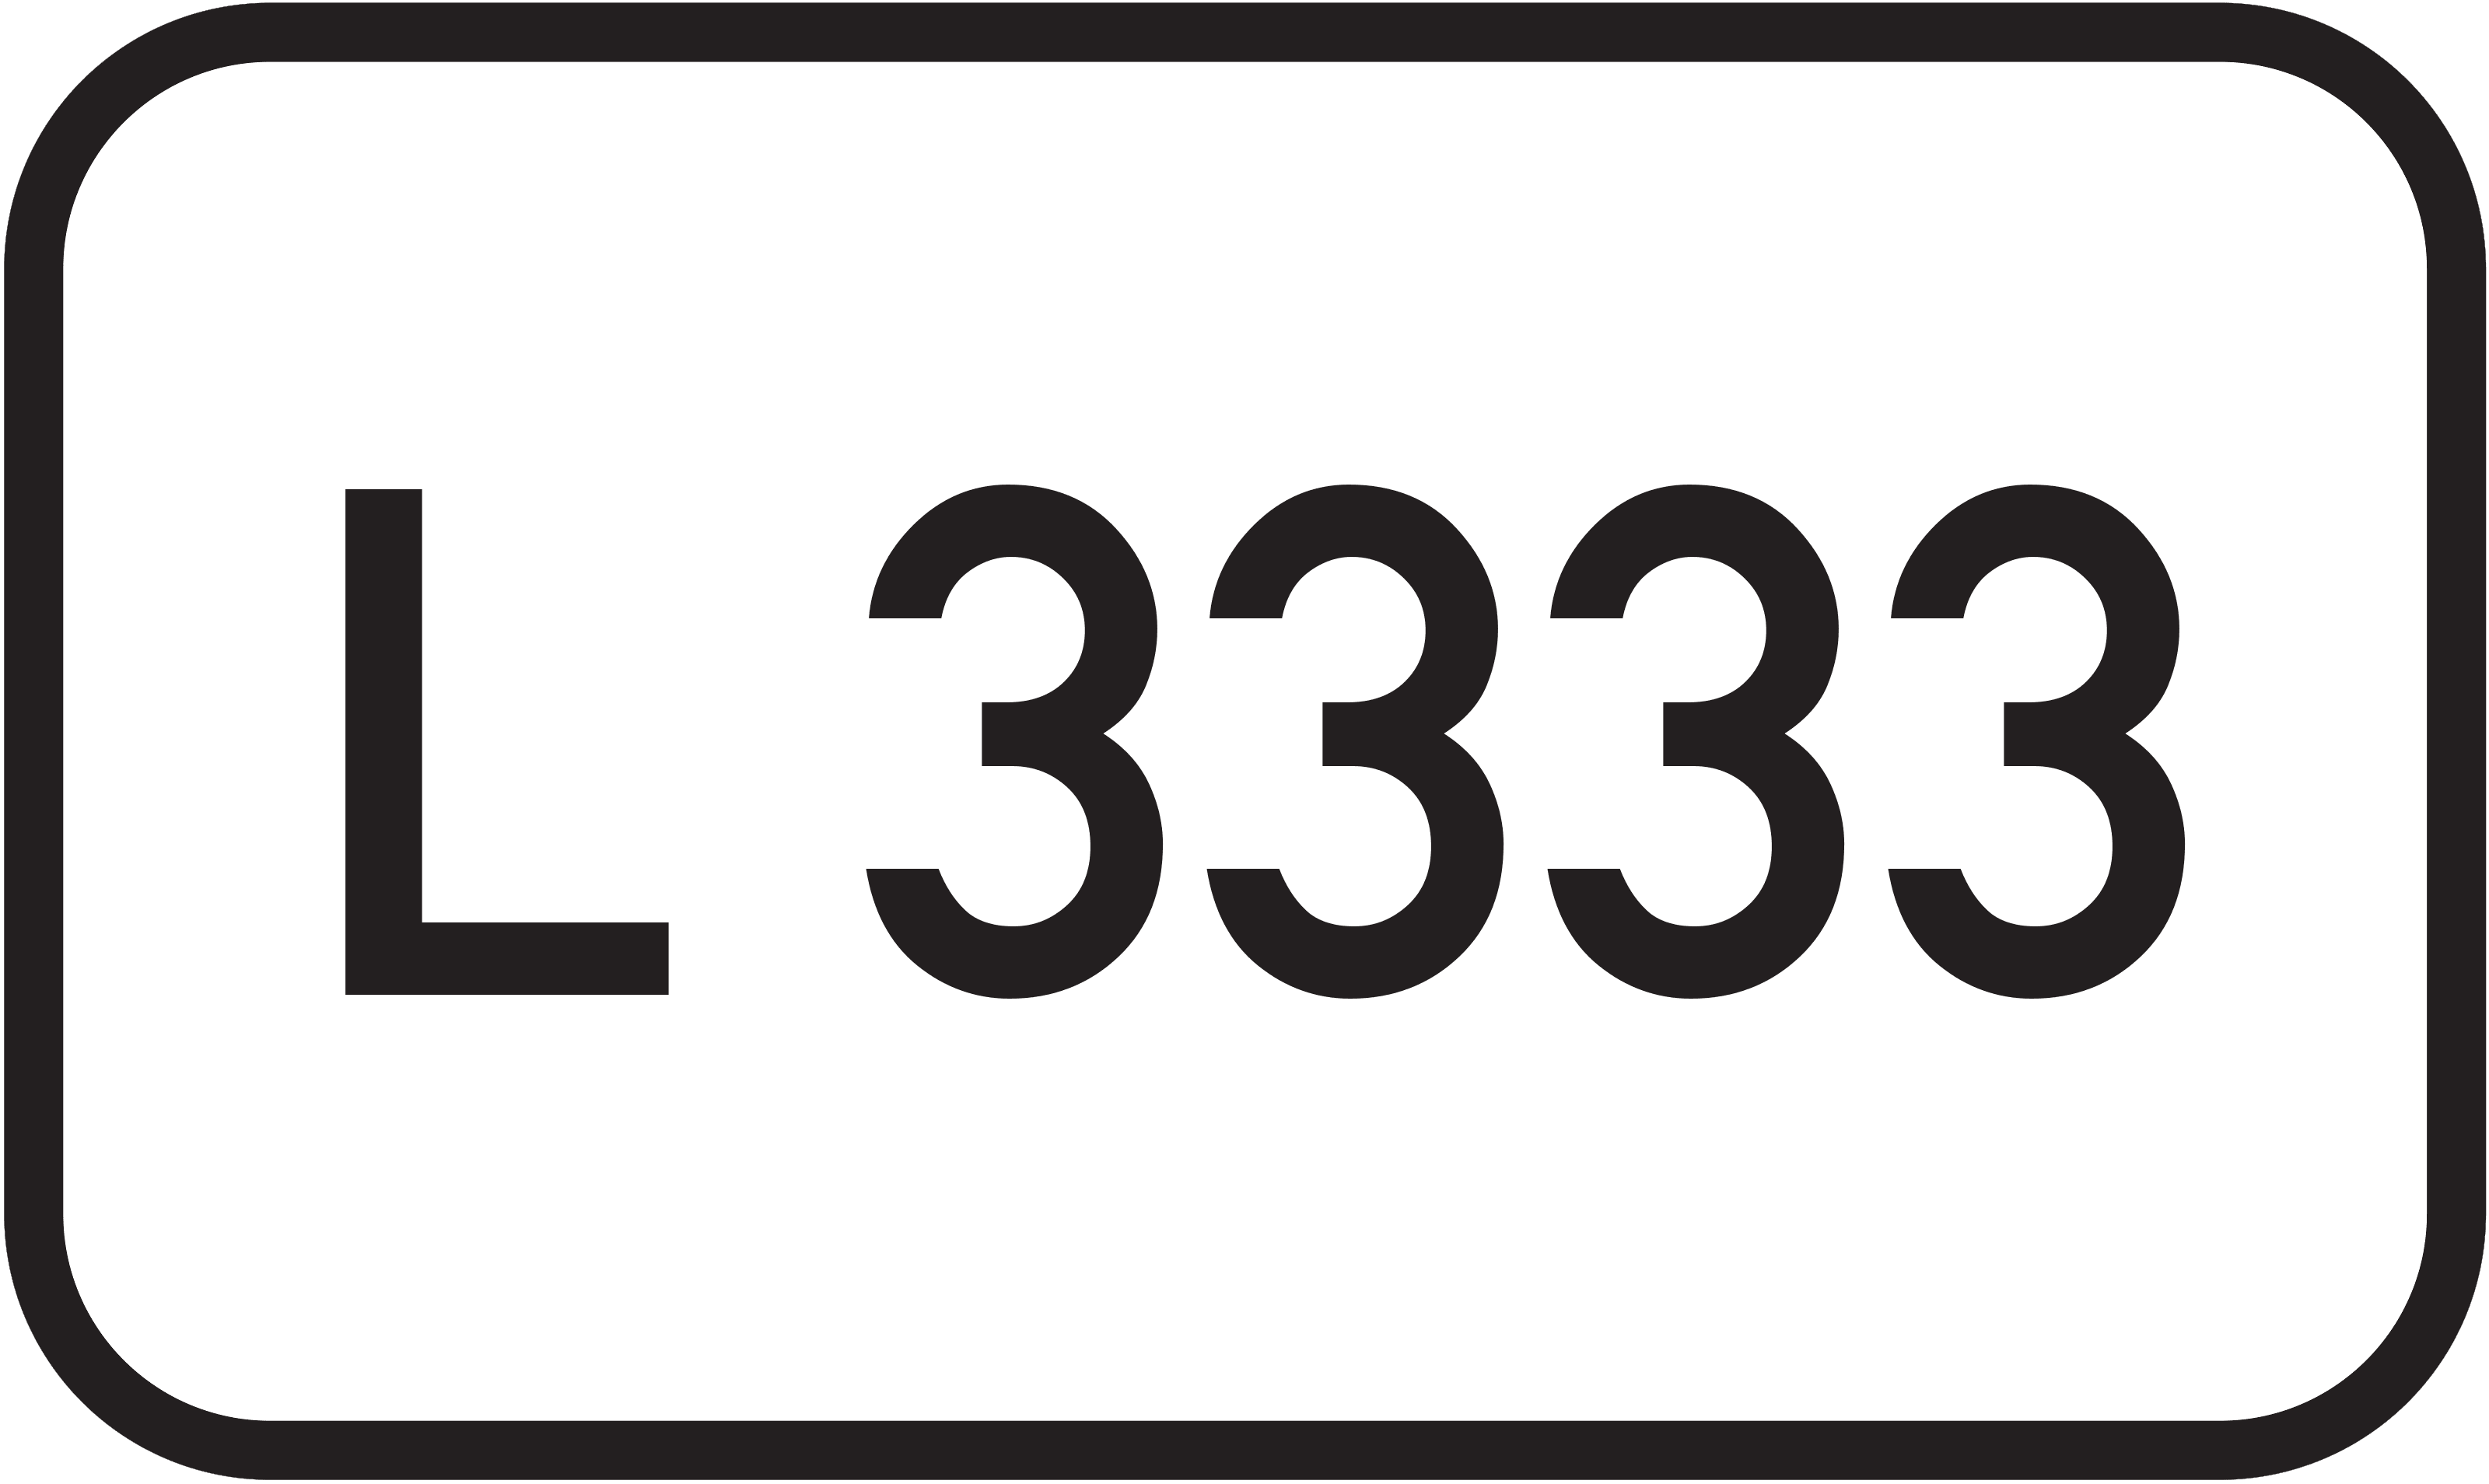 Landesstraße L 3333